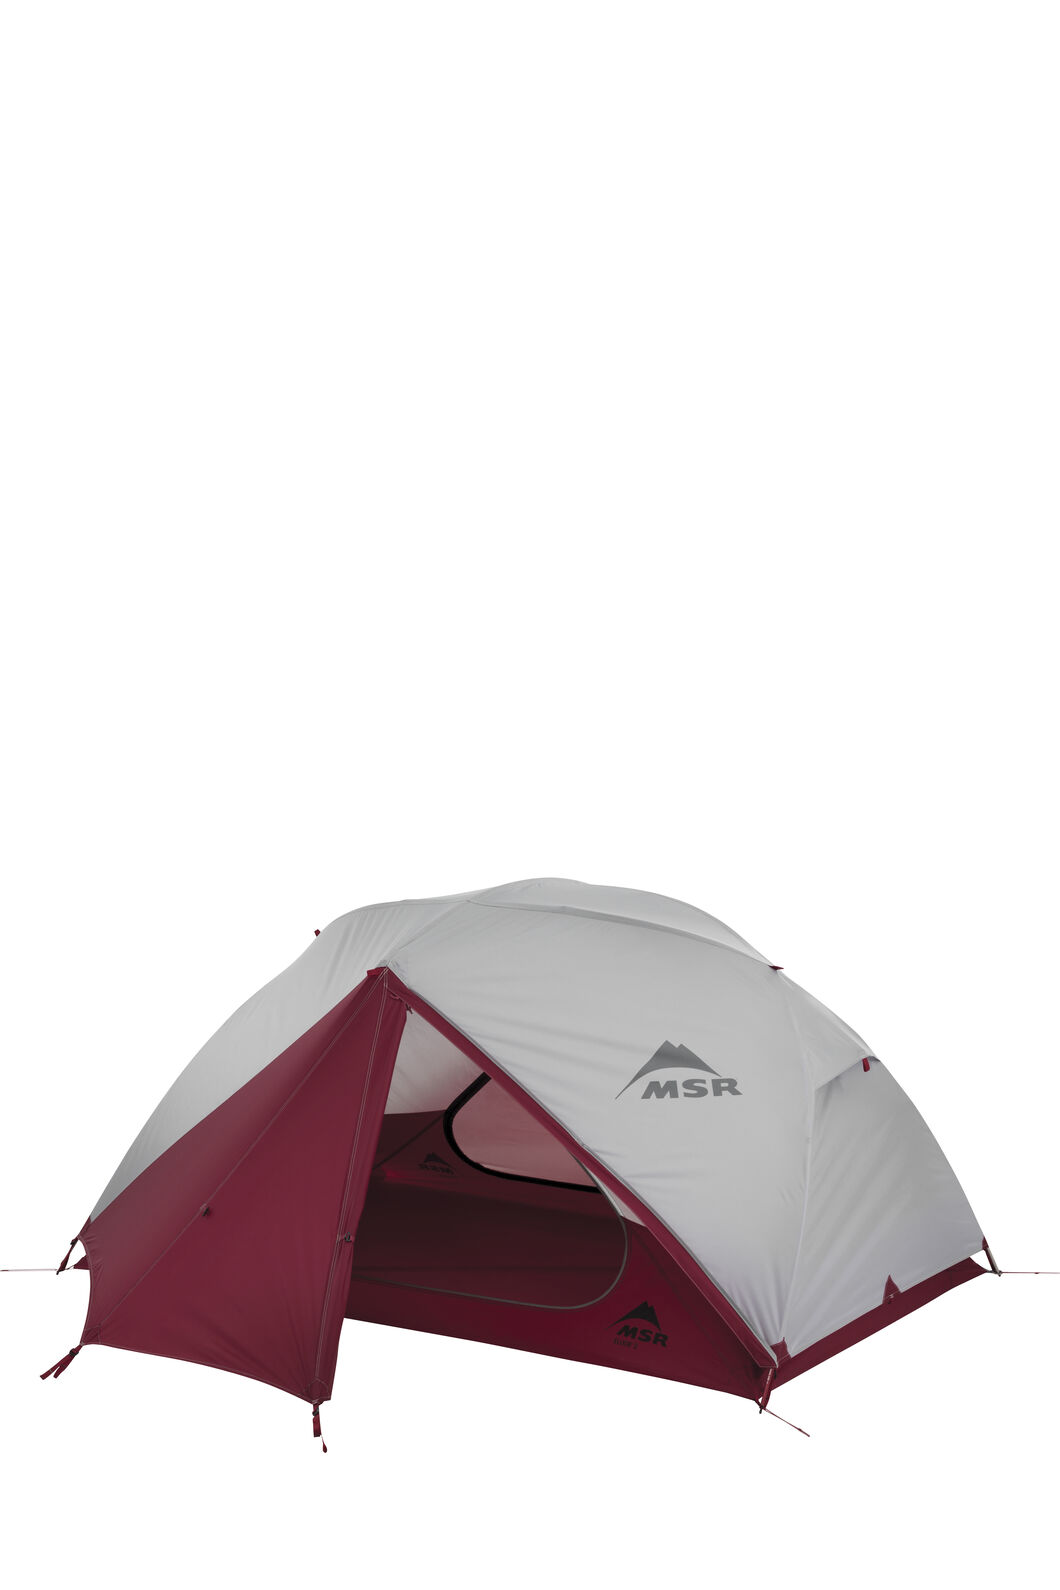 MSR Elixir™ 2 Tent | Macpac